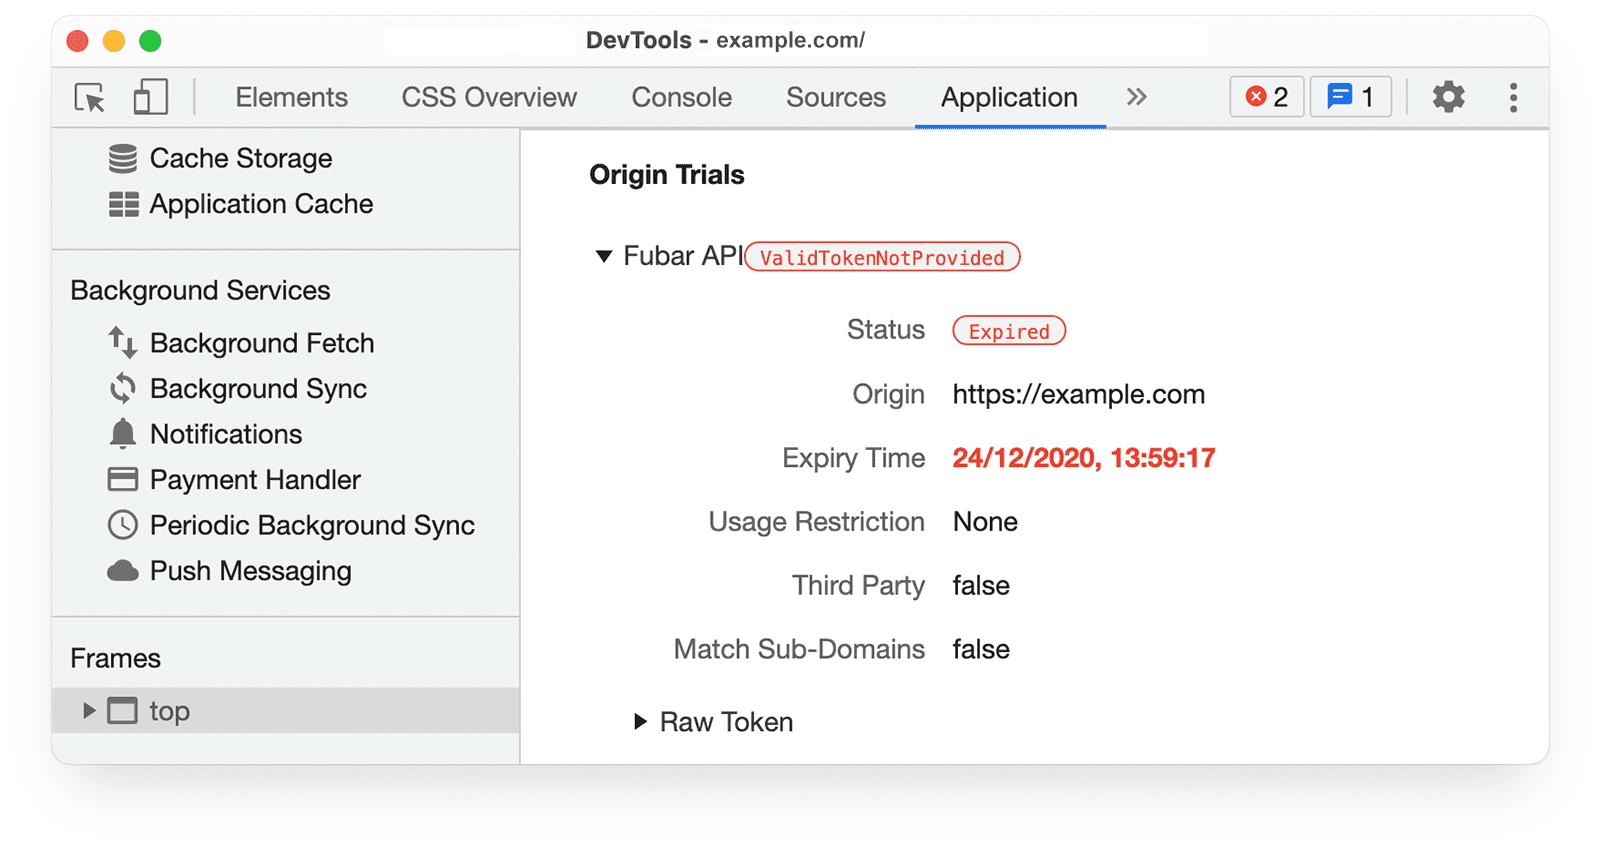 Chrome DevTools 
ऐप्लिकेशन पैनल में, ऑरिजिन ट्रायल की जानकारी से तहत, URL-TokenNot सेगमेंट के अफ़िलिएट प्रोग्राम की समयसीमा खत्म हाे चुकी है और ऑरिजिन ट्रायल की जानकारी दिख रही है